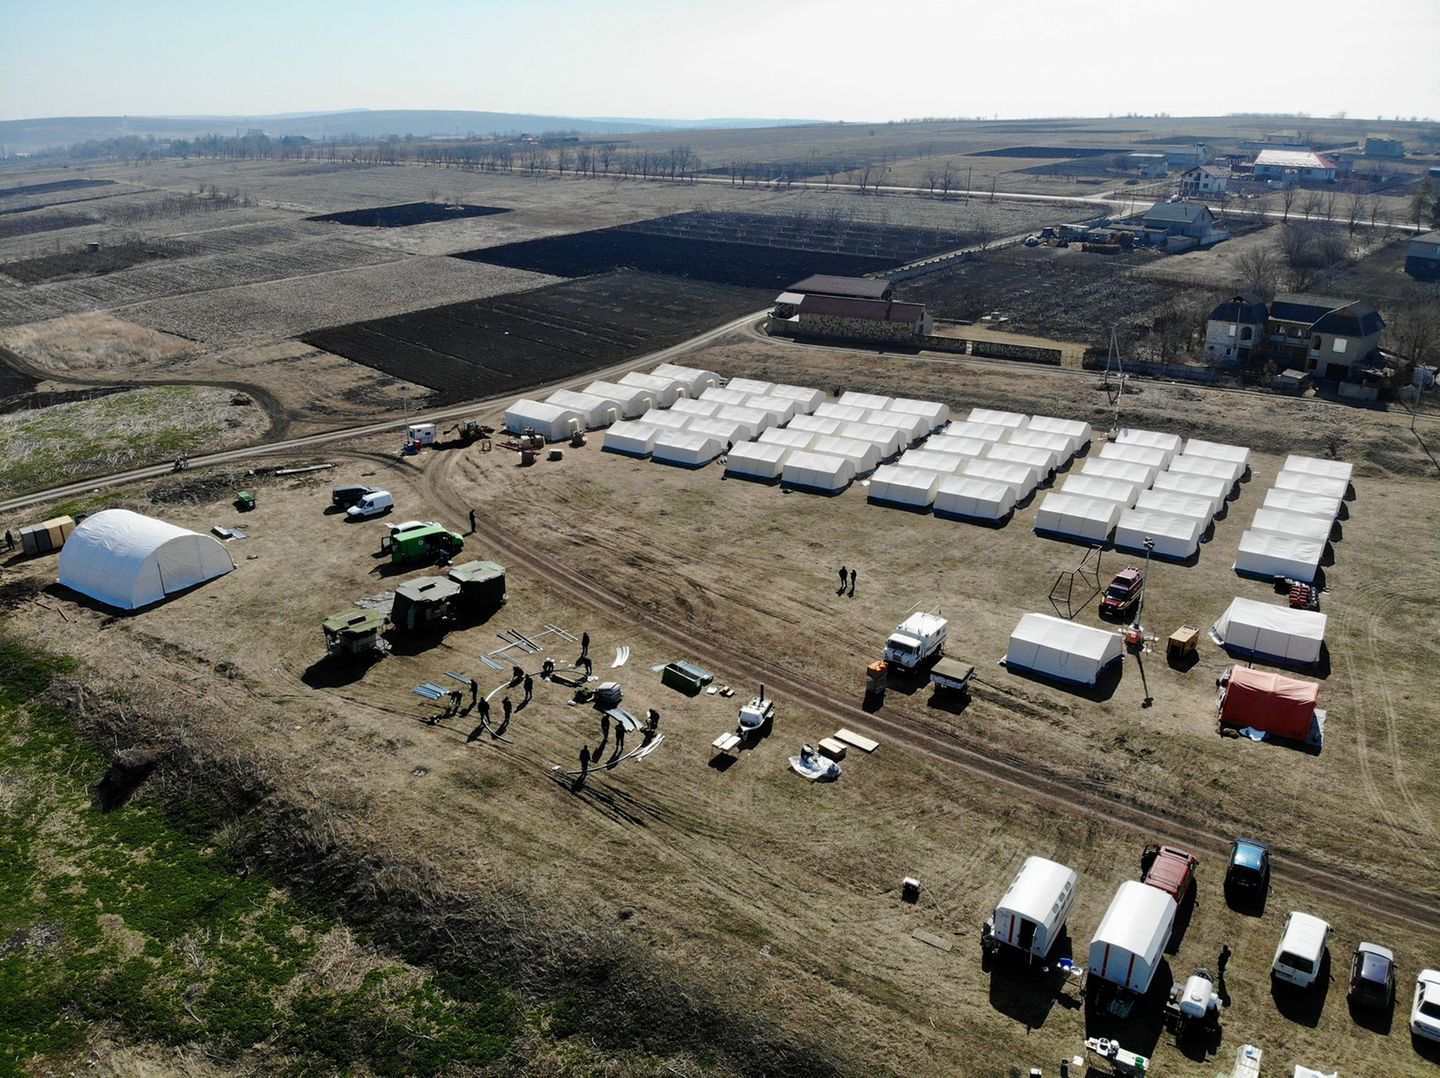 Zelt an Zelt auf dem Fußballfeld: Binnen weniger Tage haben die Helfer der "AHRche" ein Camp für 600 Geflüchtete in Moldawien errichtet